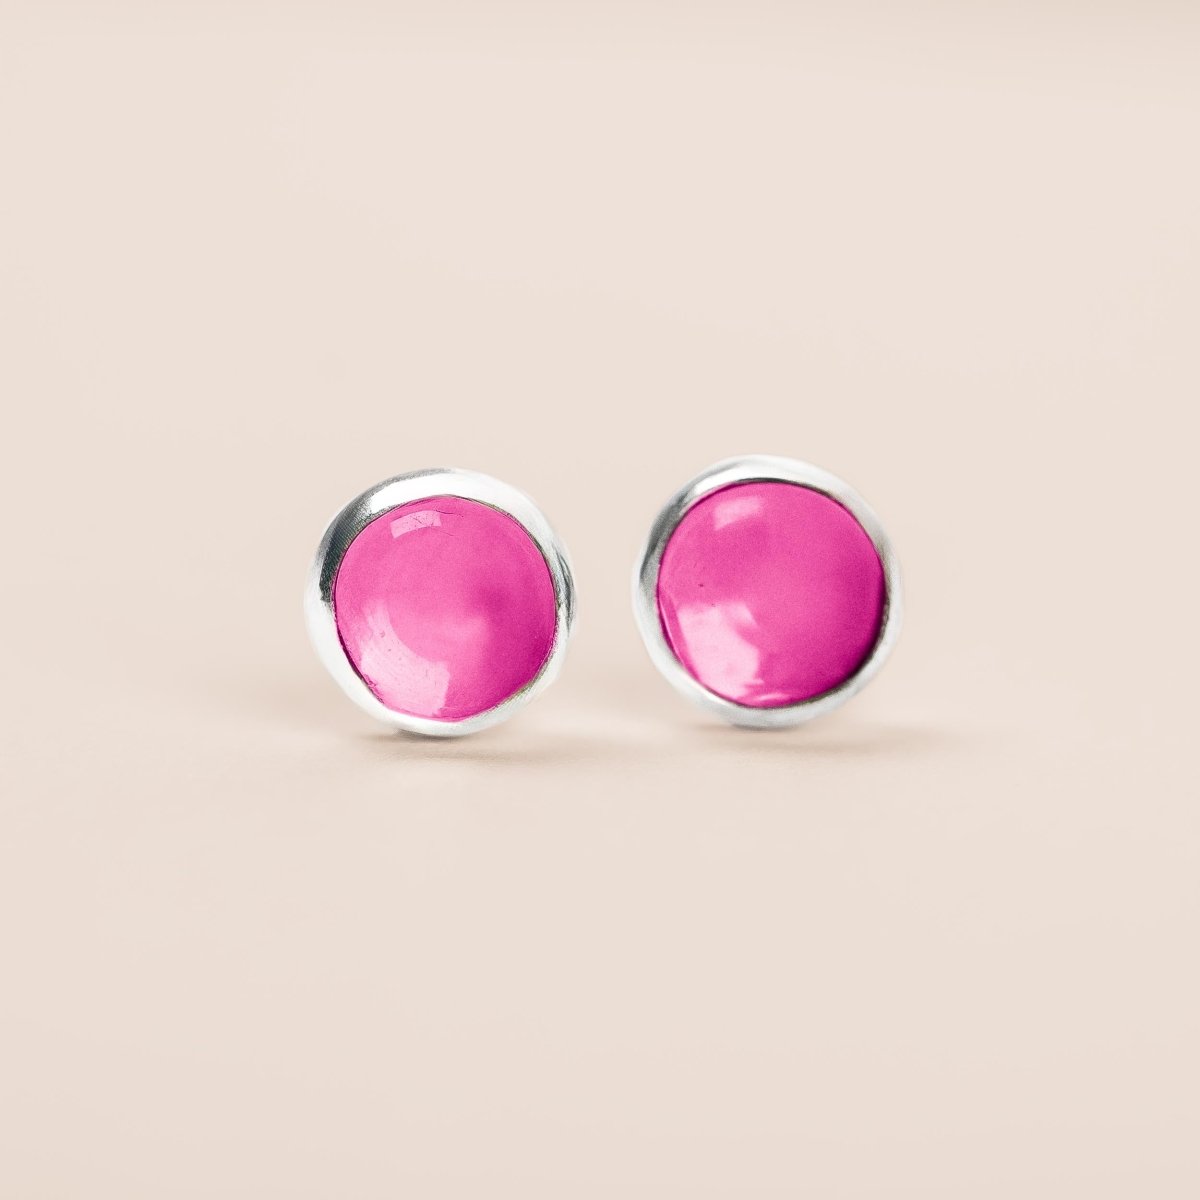 Ruby Gemstone Stud Earrings - Melanie Golden Jewelry - Earrings, stud, stud earrings